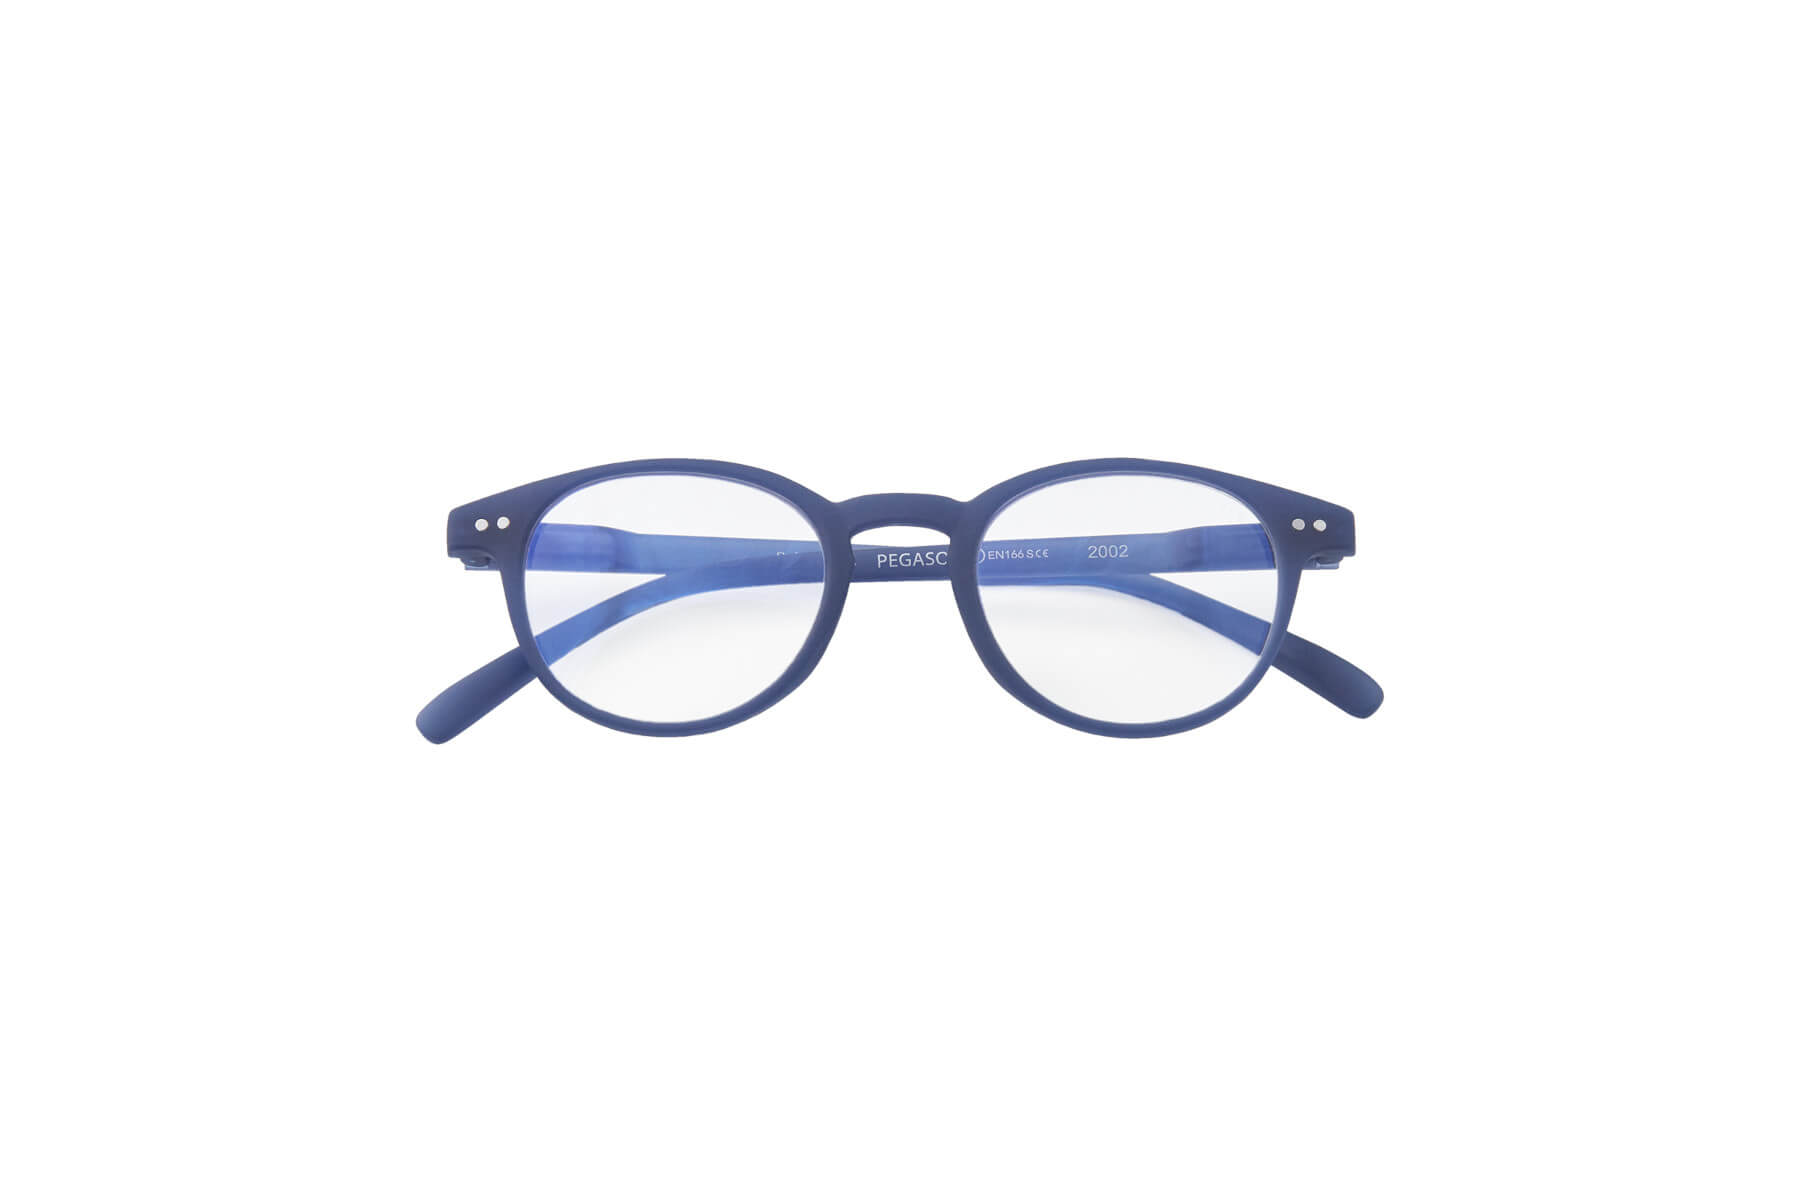 Comprar Gafas C01 con filtro Luz Azul